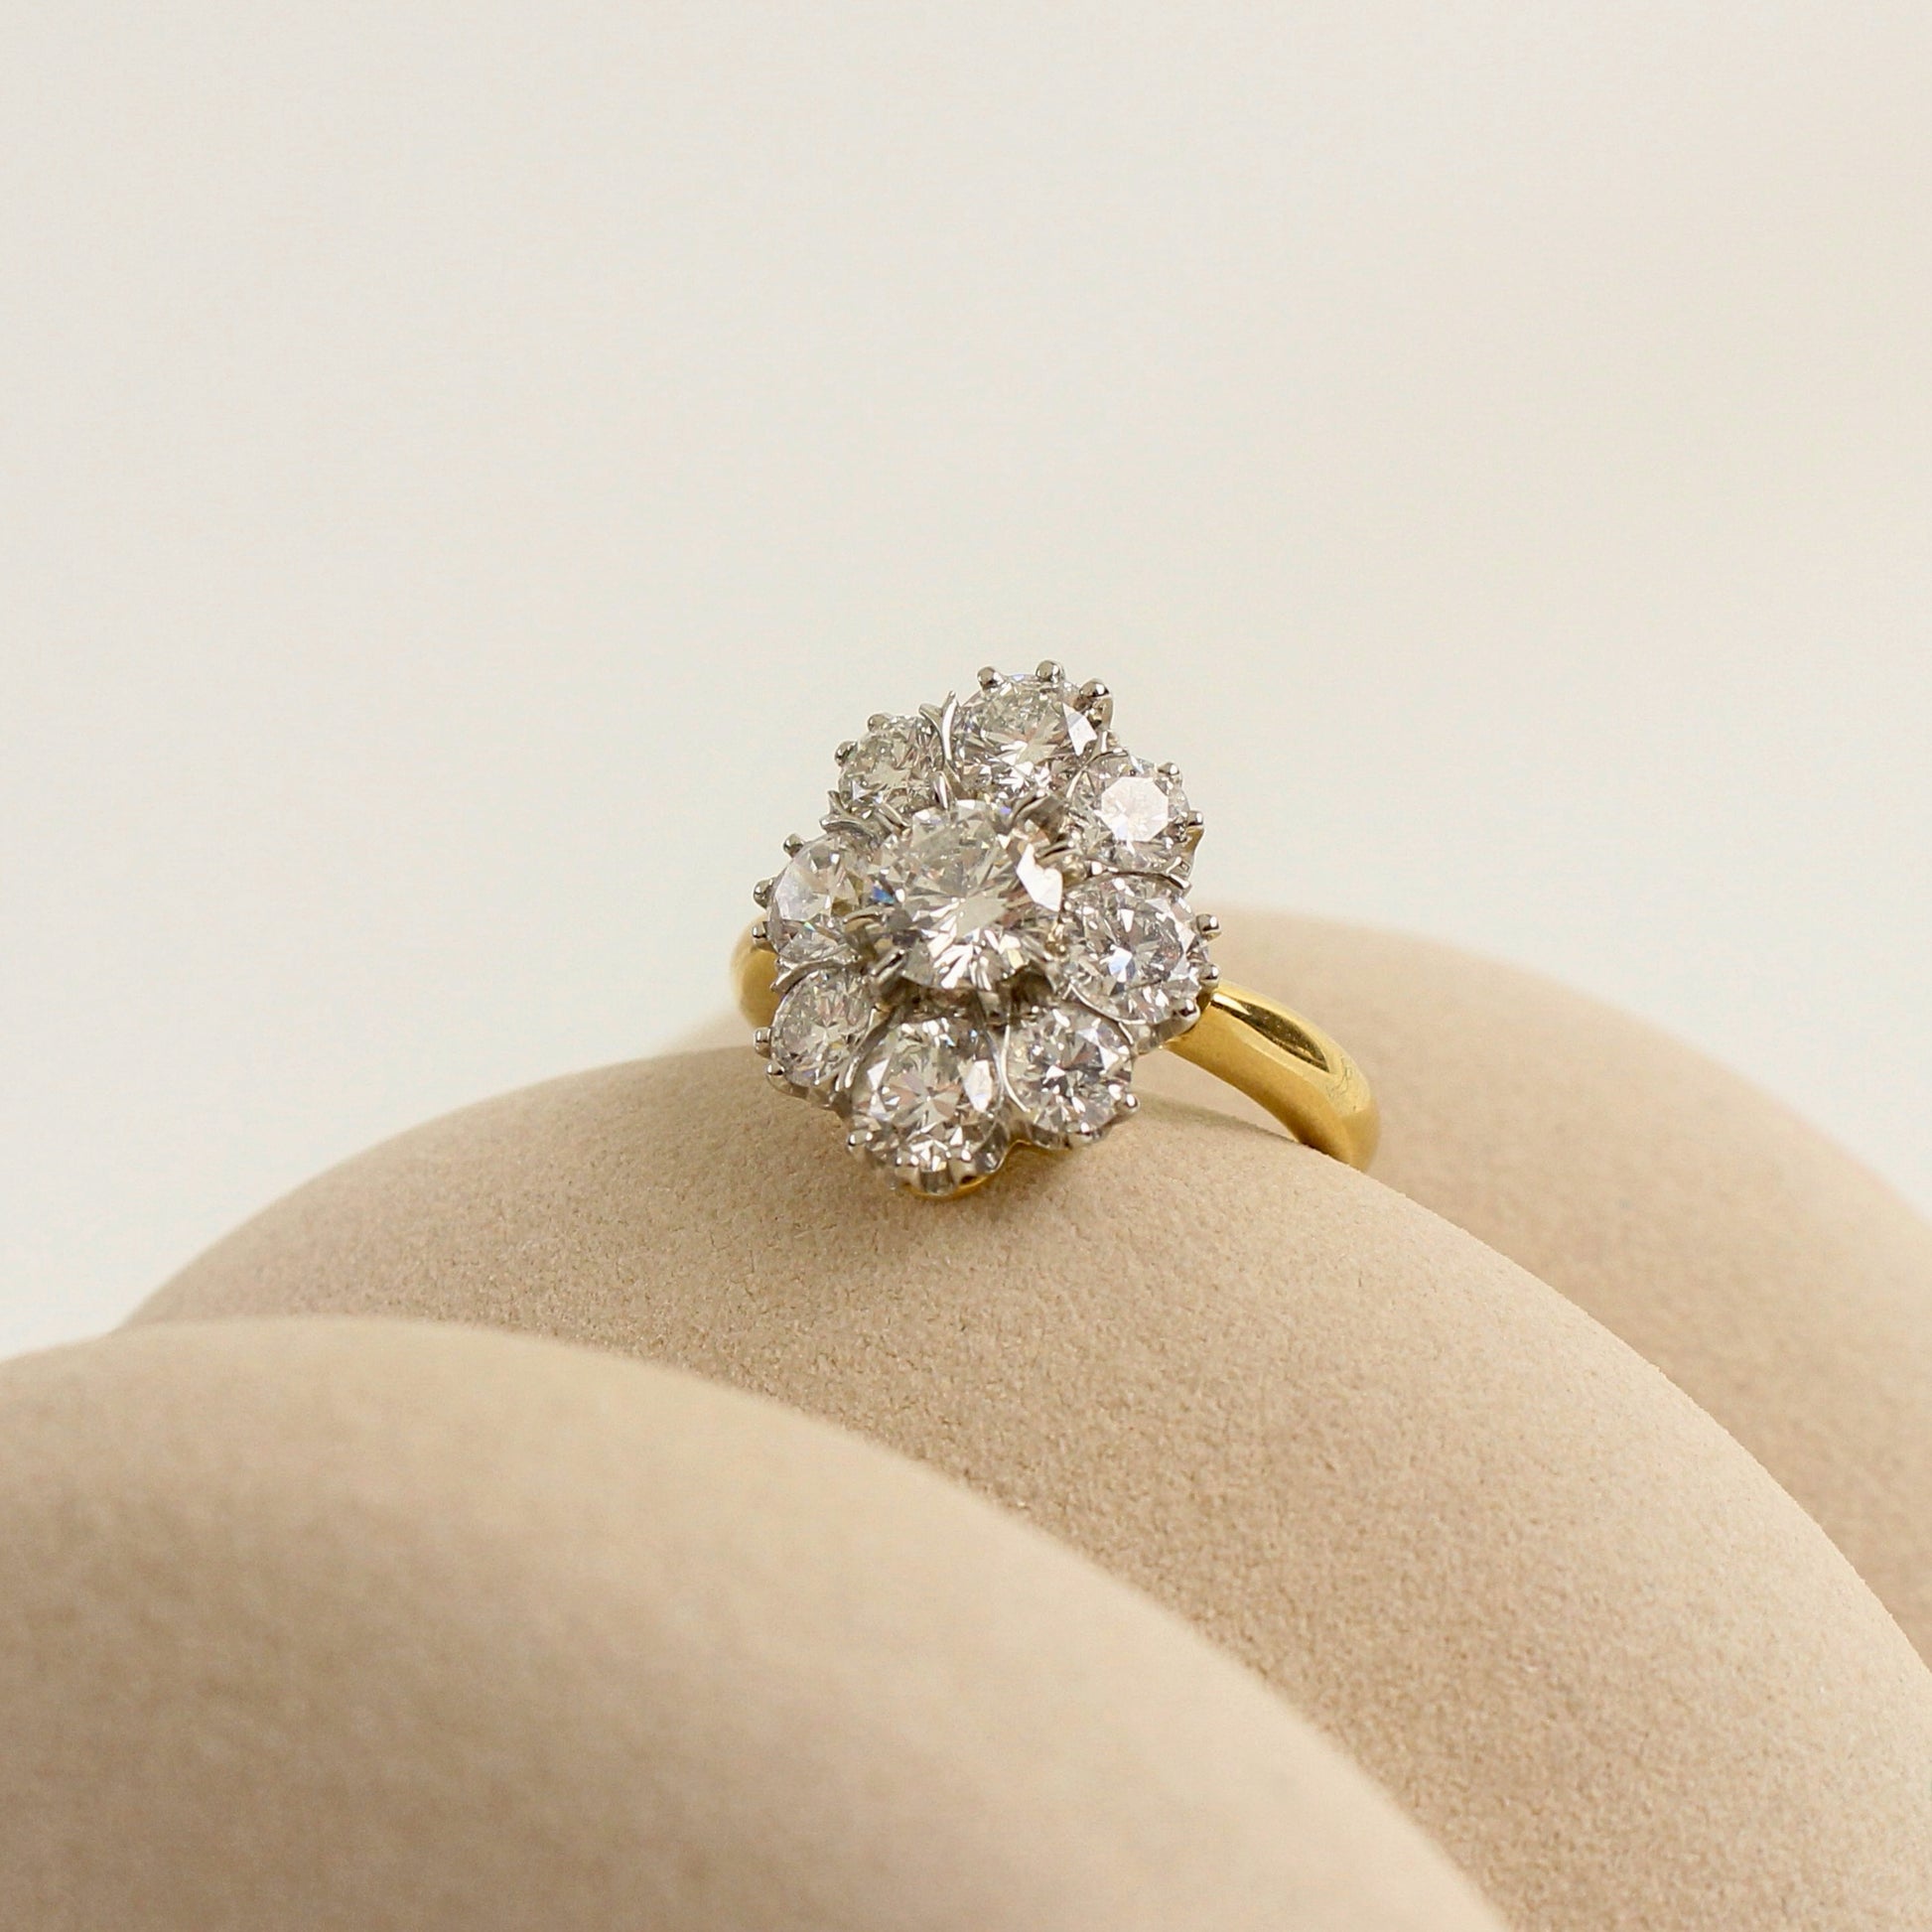 Bague pompadour diamants/ pierre centrale de 0,80 carat/entourage diamants pour 2,29 carats/monture or jaune et platine